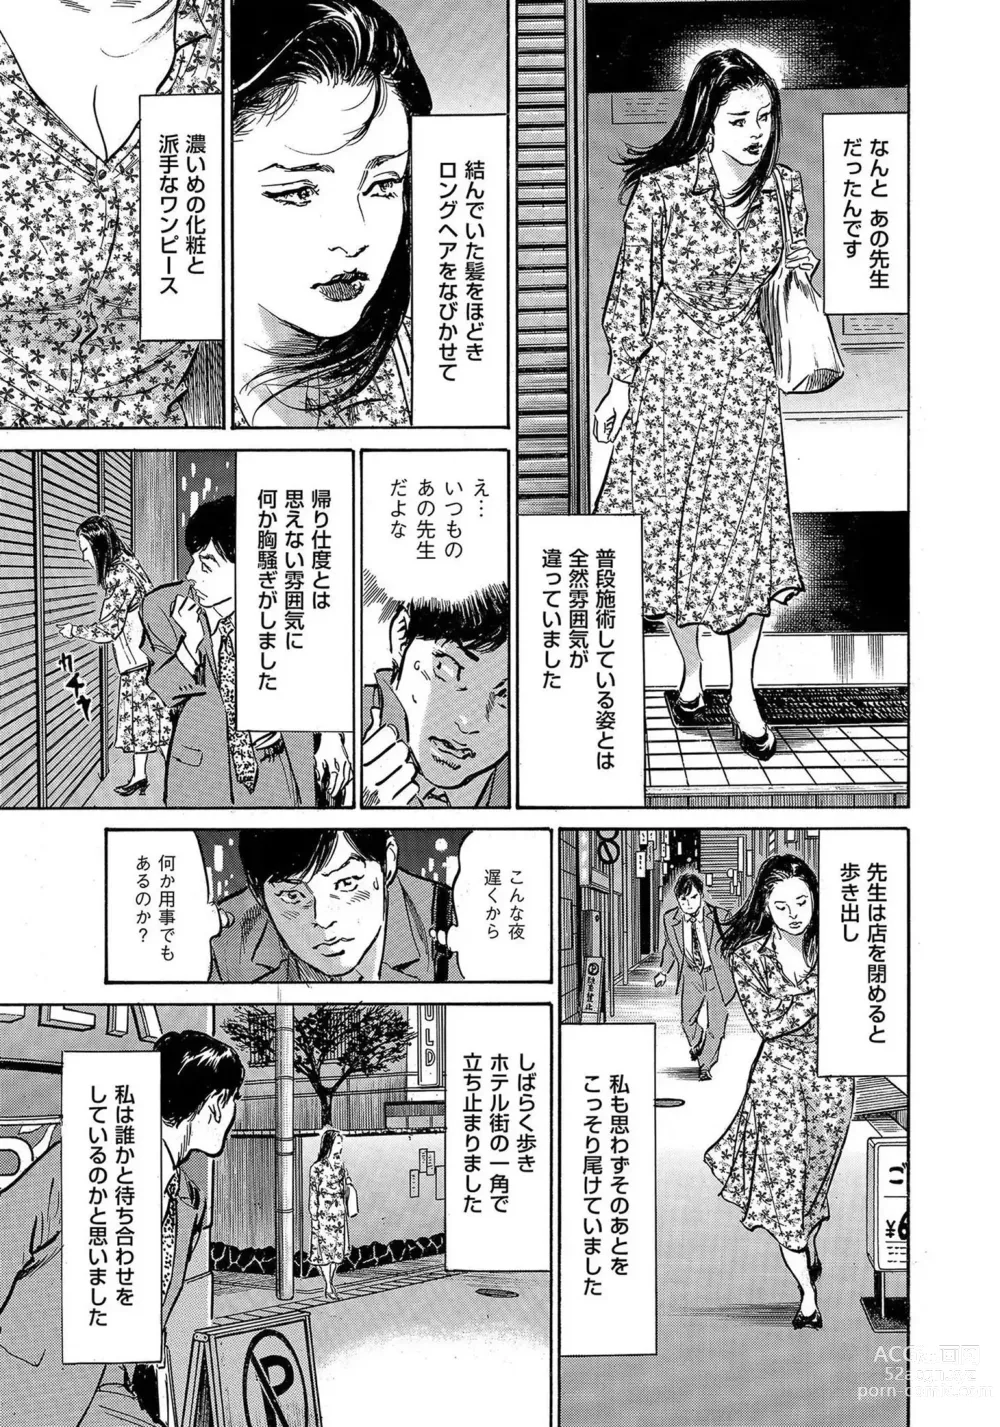 Page 6 of manga Saikou ni Toroketa Honki de Honto no Hanashi 16 episodes